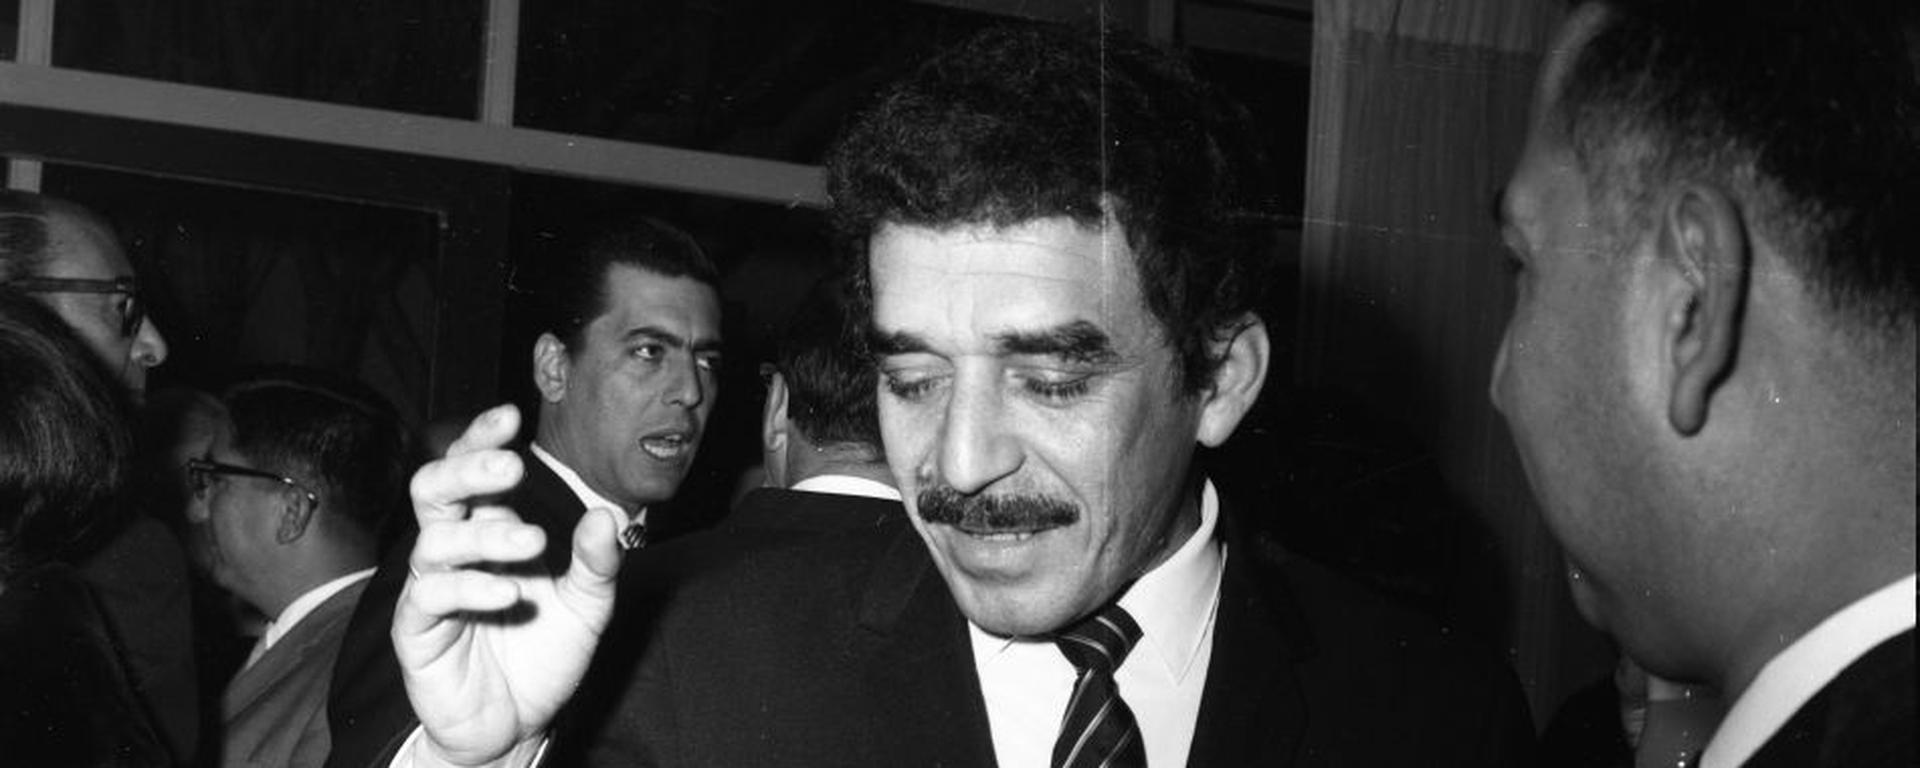 Titanes en el ring: La foto que define el encuentro histórico entre Gabriel García Márquez y Mario Vargas Llosa